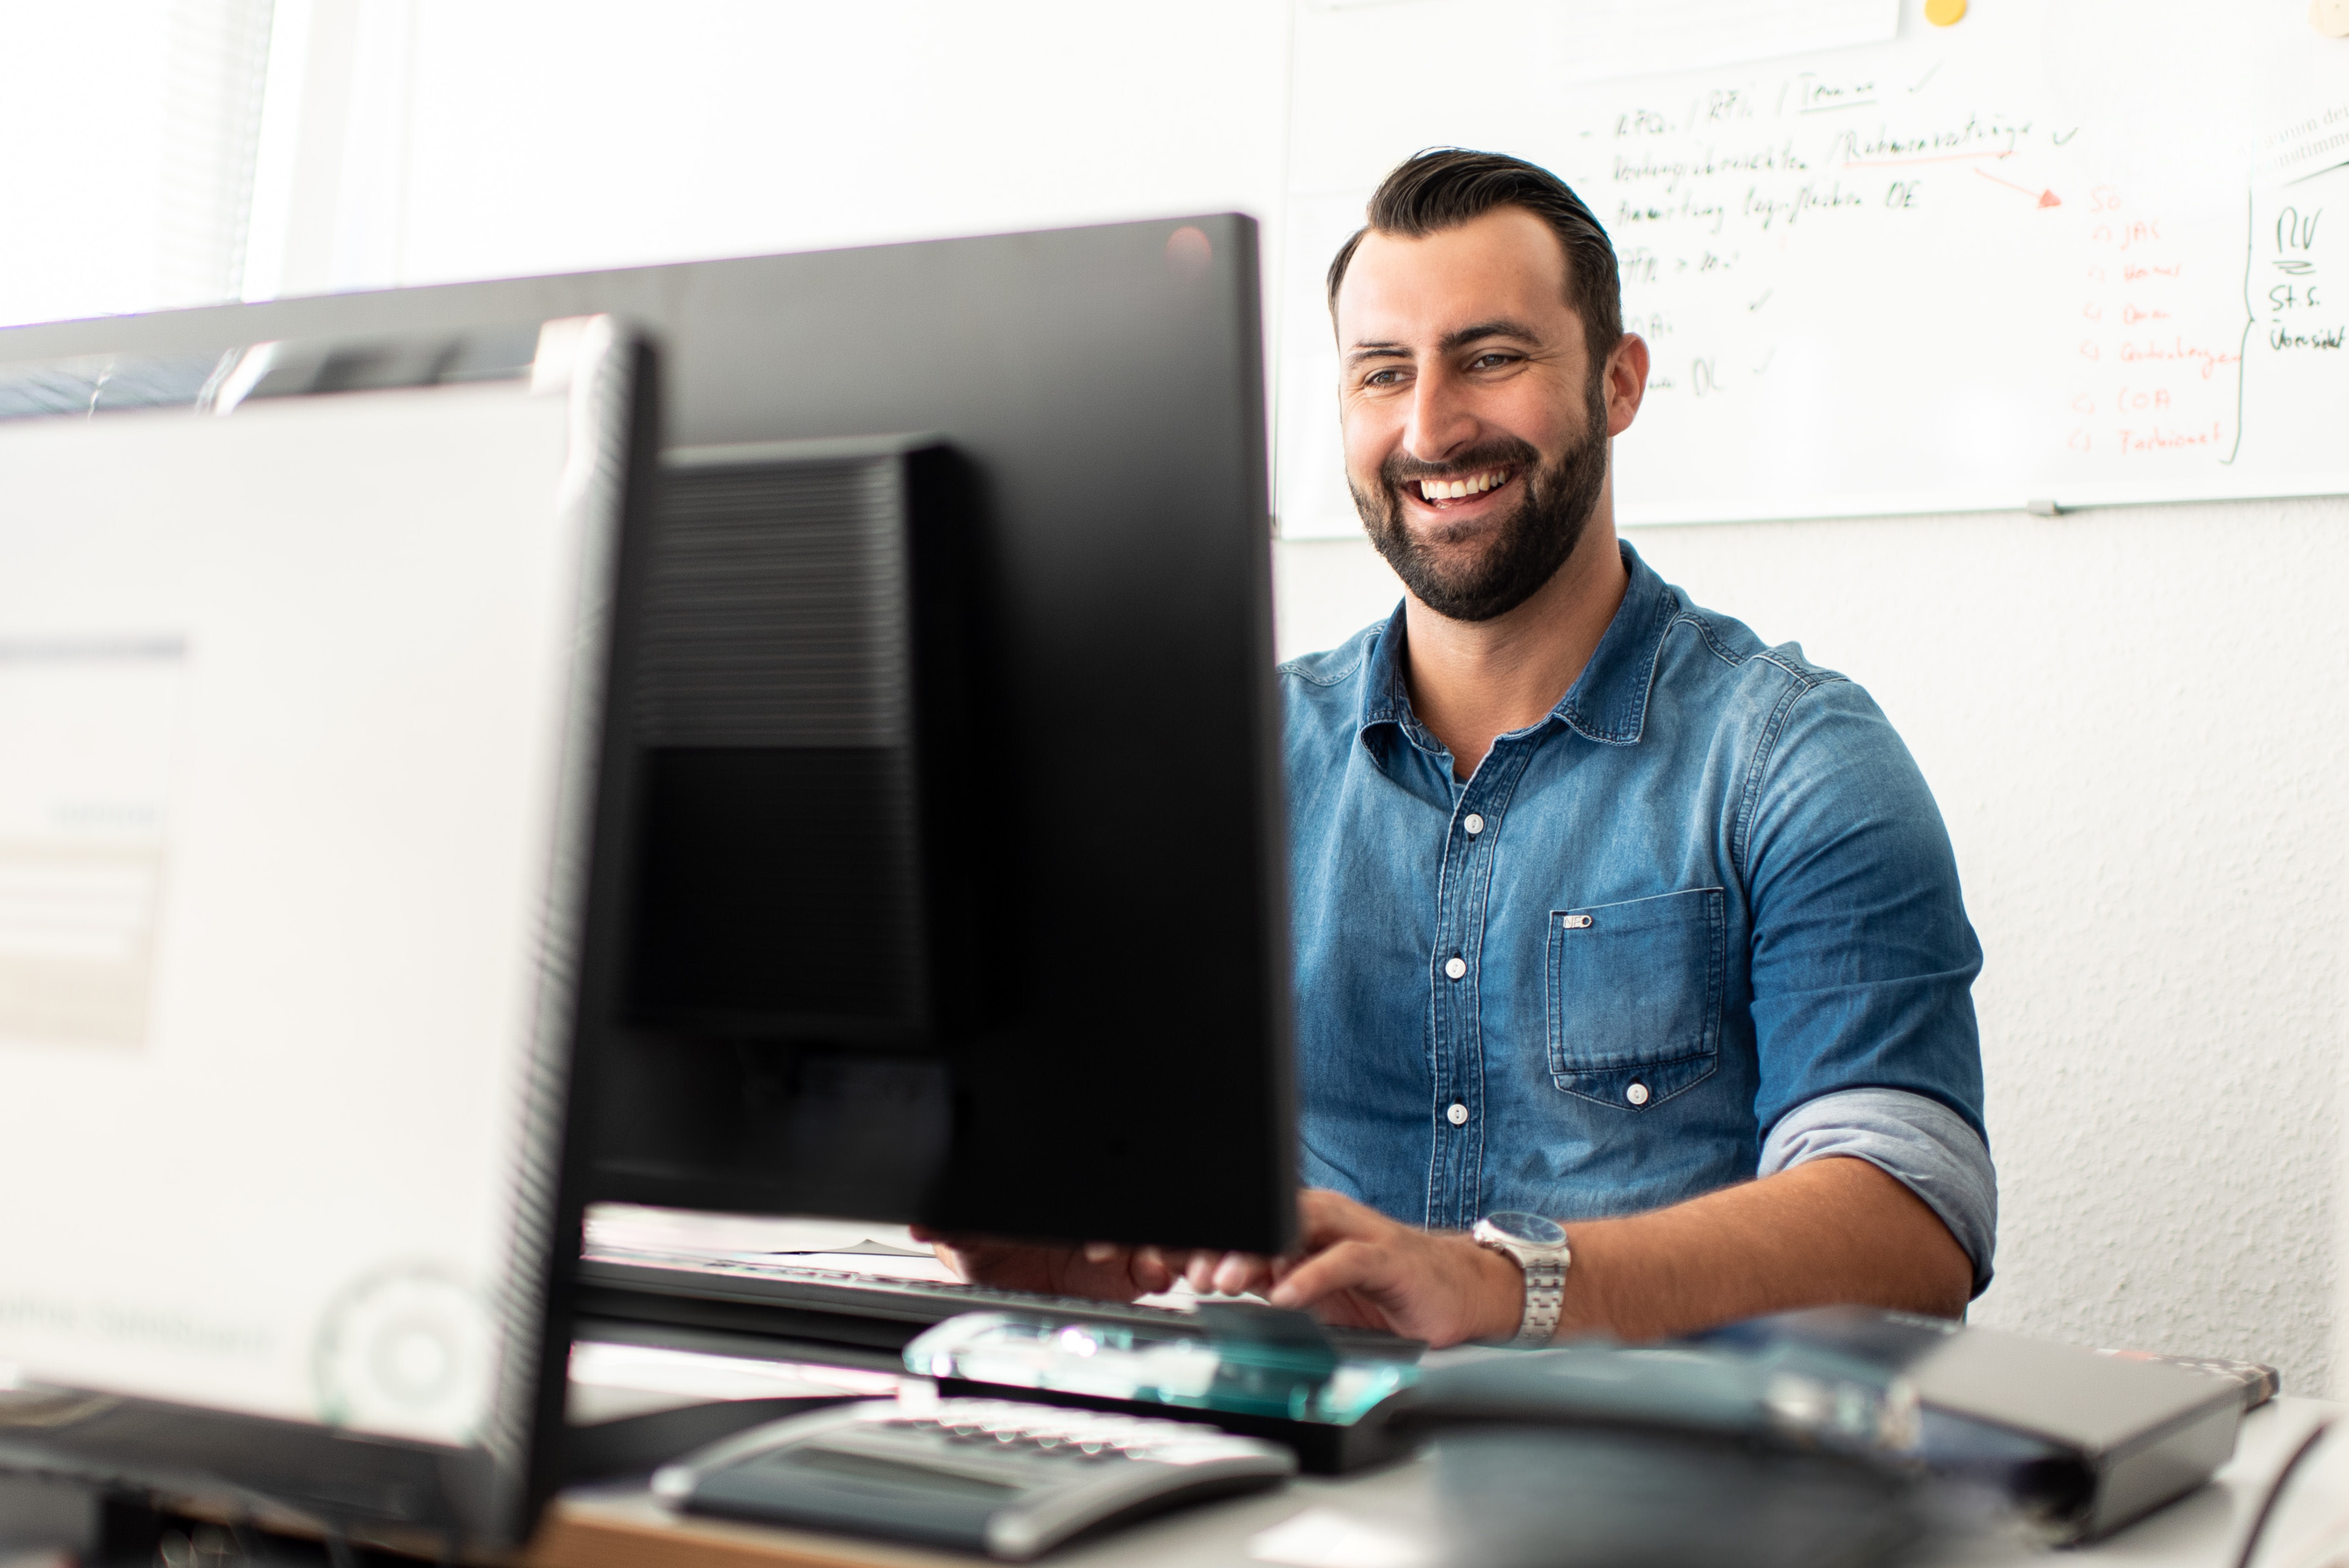 Mann mit Bart und Jeans Hemd sitzt im Büro am Bildschirm und lacht